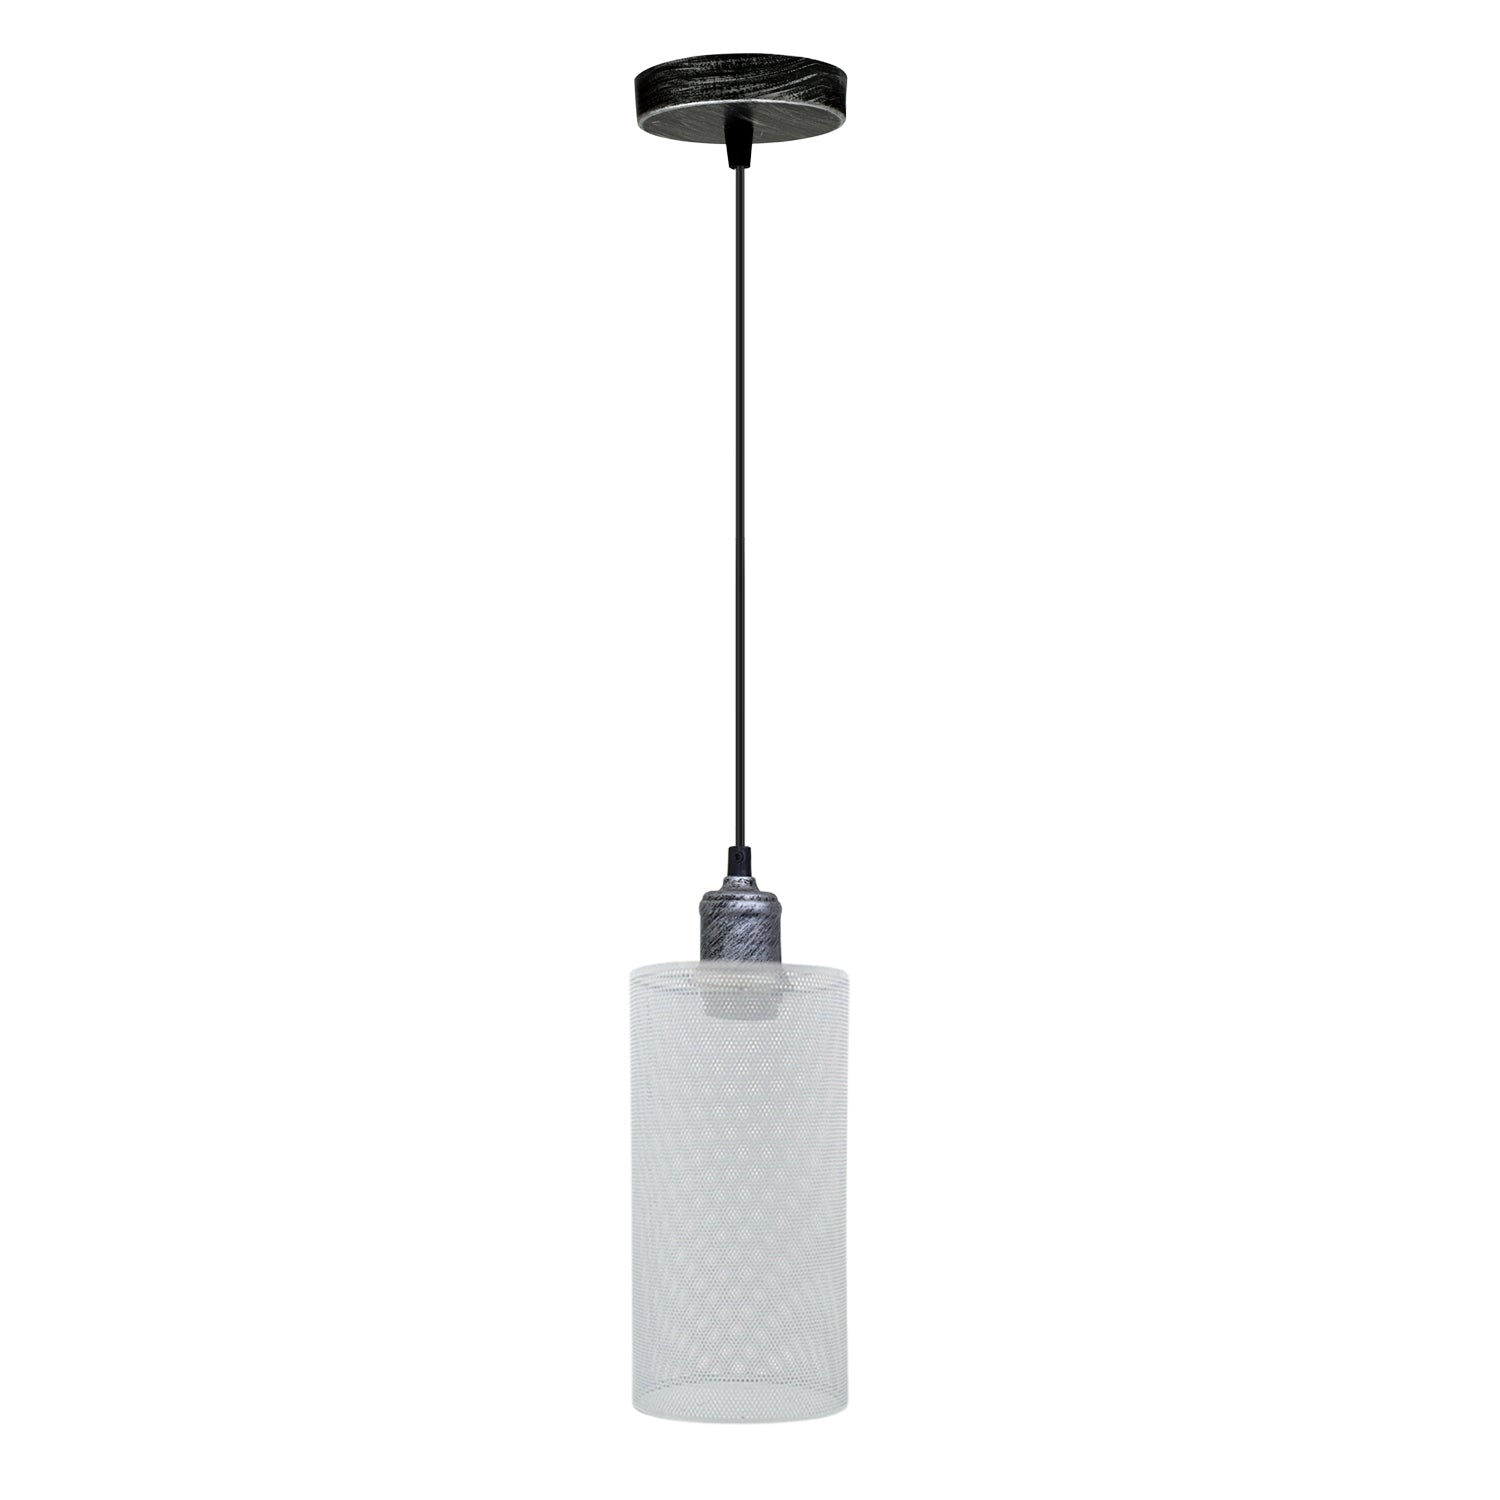 Nordische Design-Lampe: Weißer Käfig mit Silber-Halterung